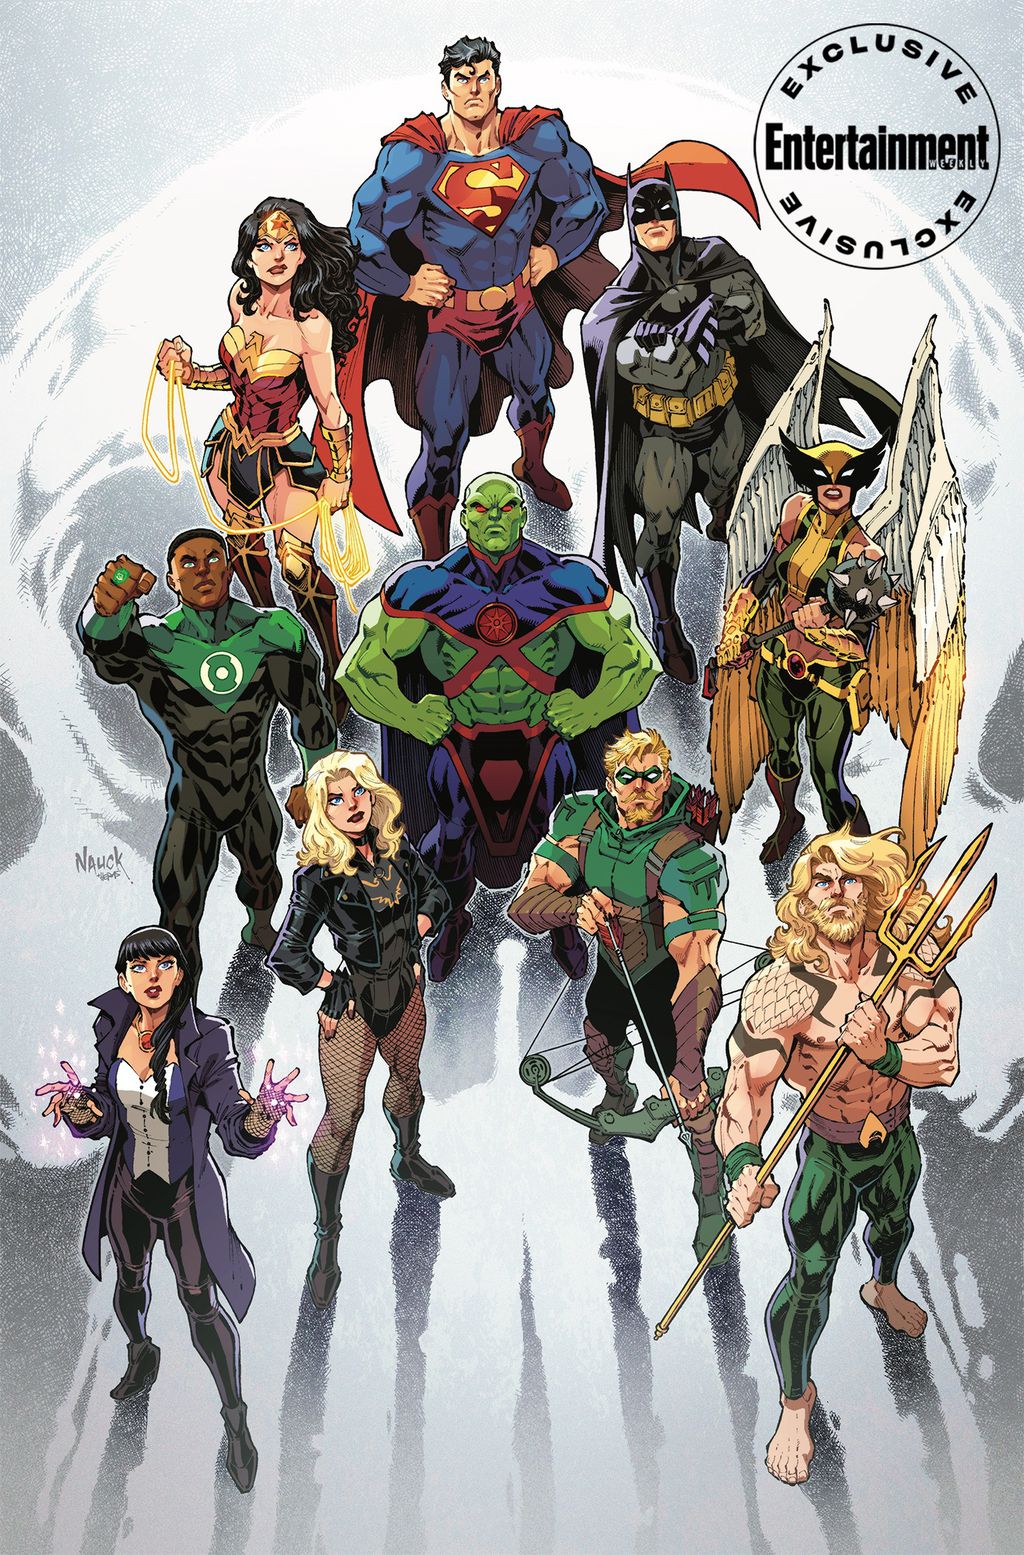 Capa variante de Justice League nº 75 por Todd Nauck (Imagem: Reprodução/Entertainment Weekly)